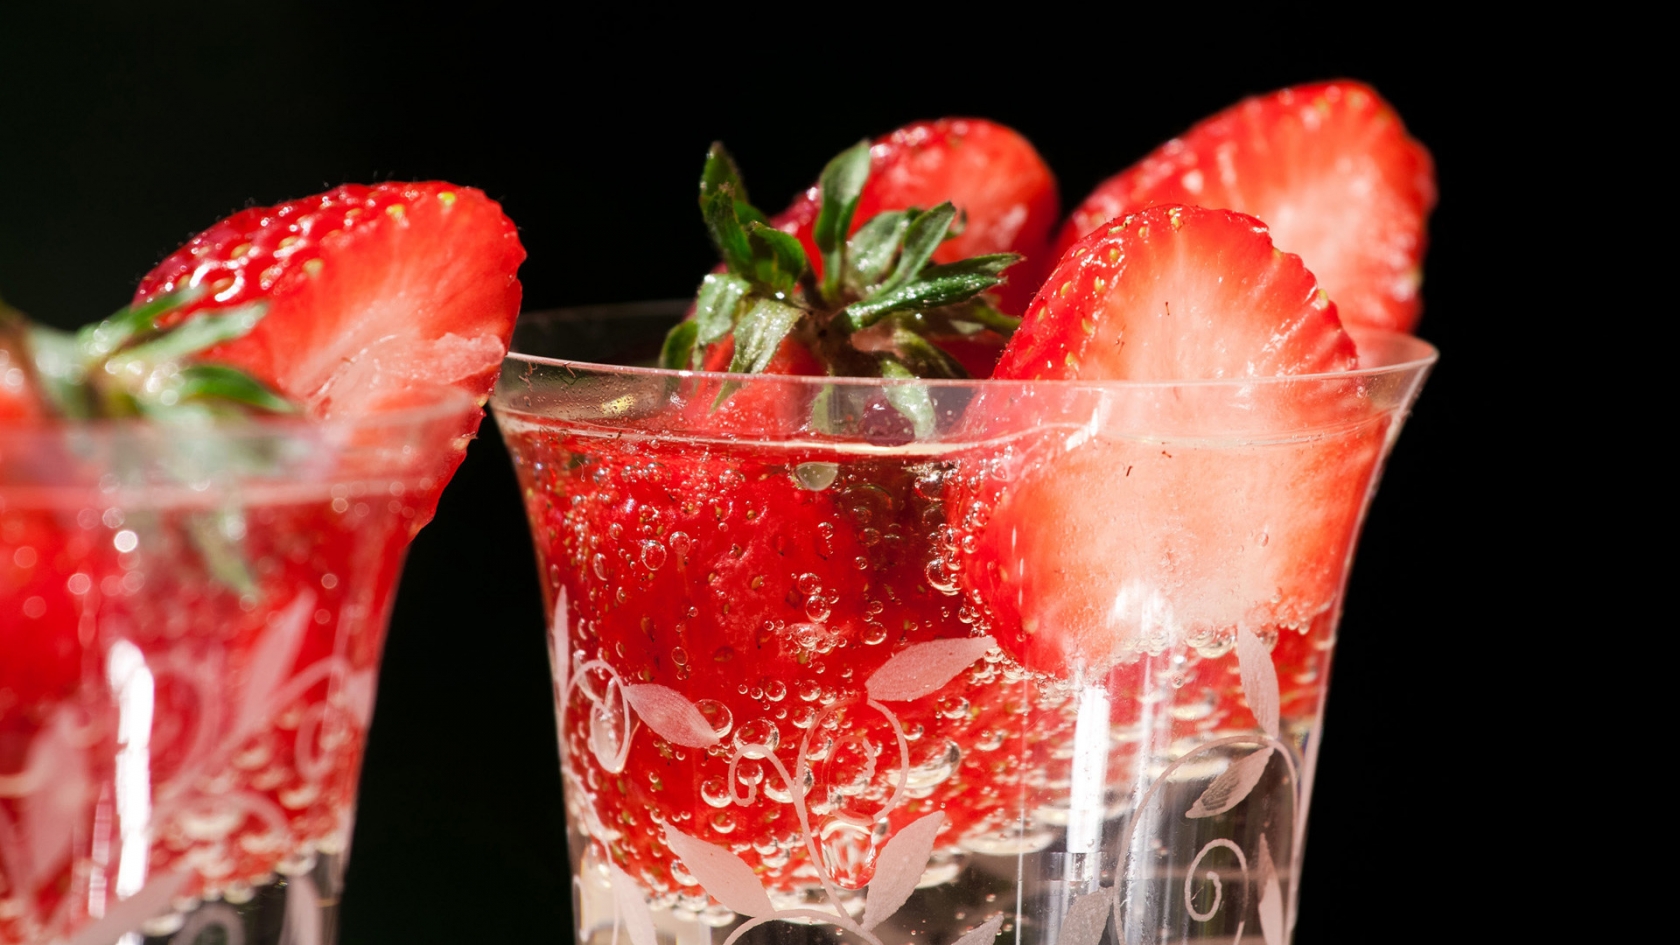 Fresh strawberries in glasses for 1680 x 945 HDTV resolution